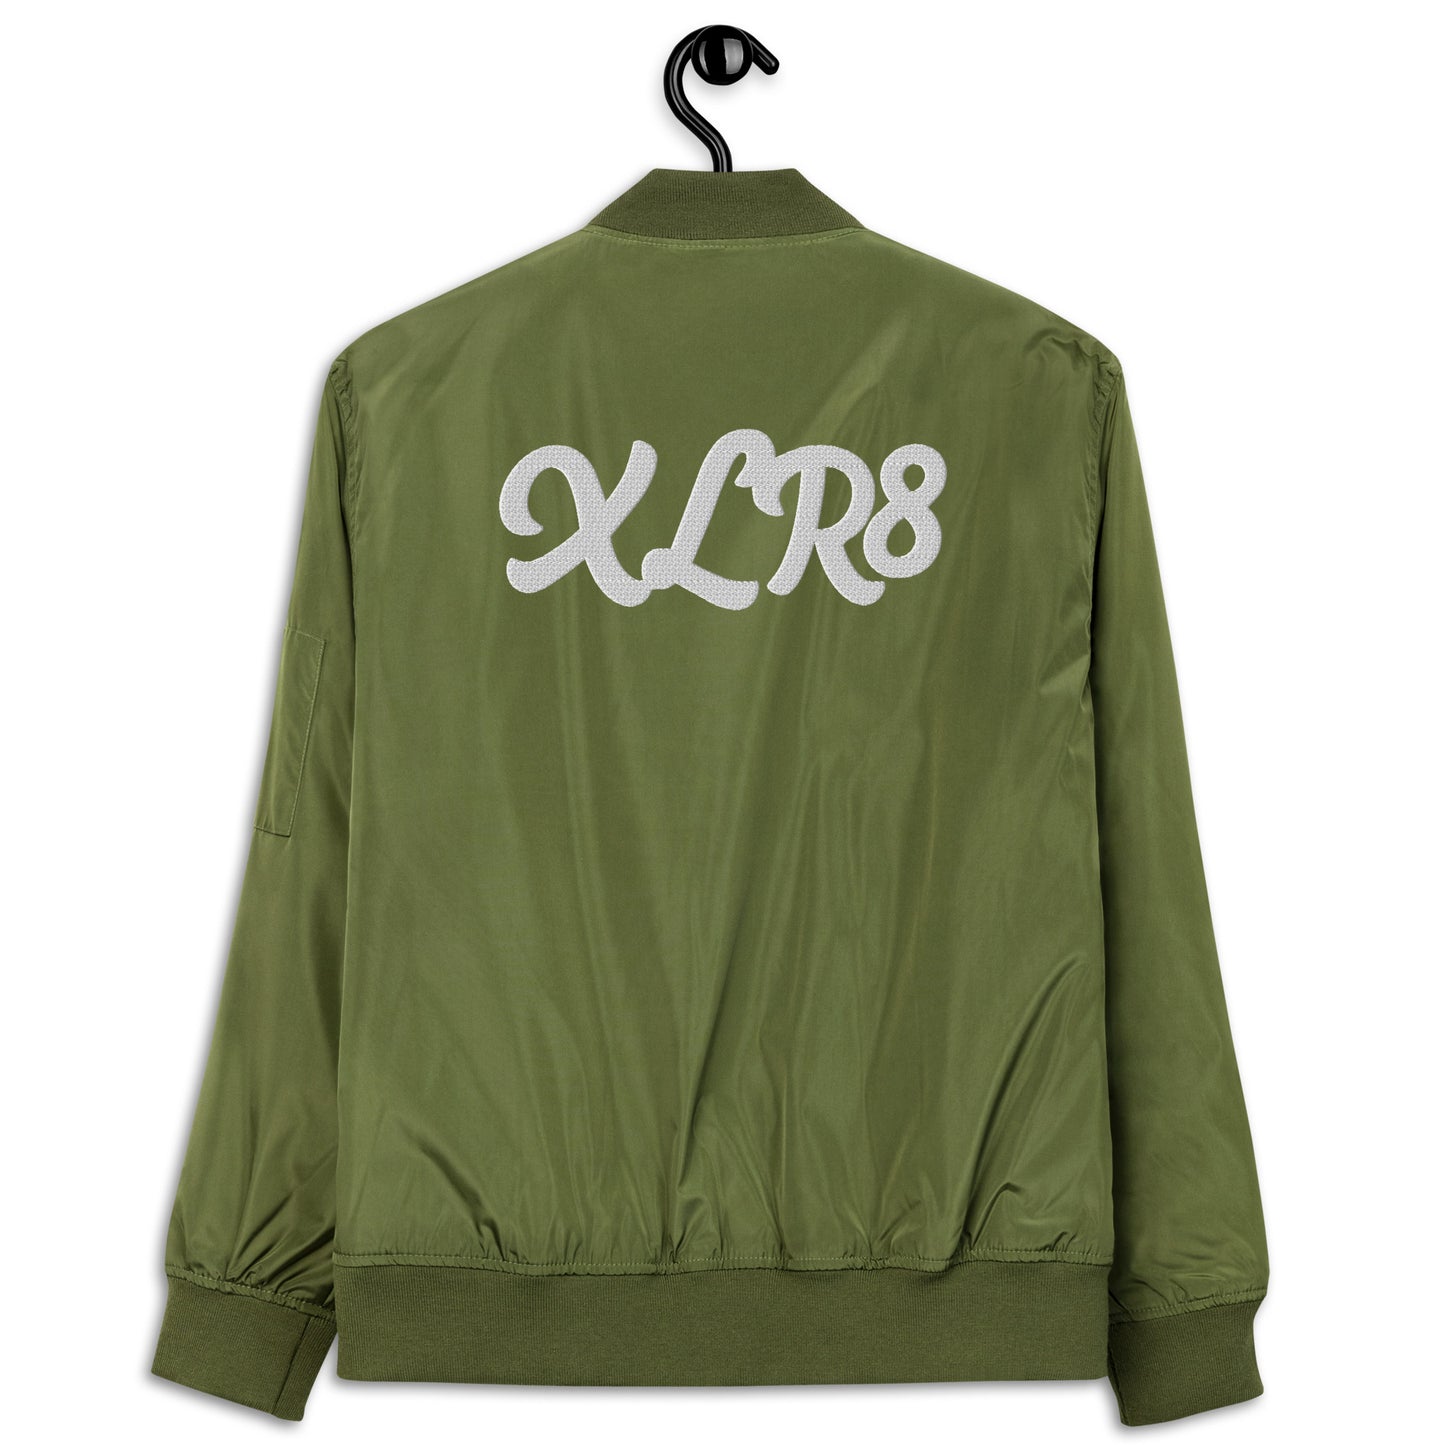 XLR8 bomber jacket